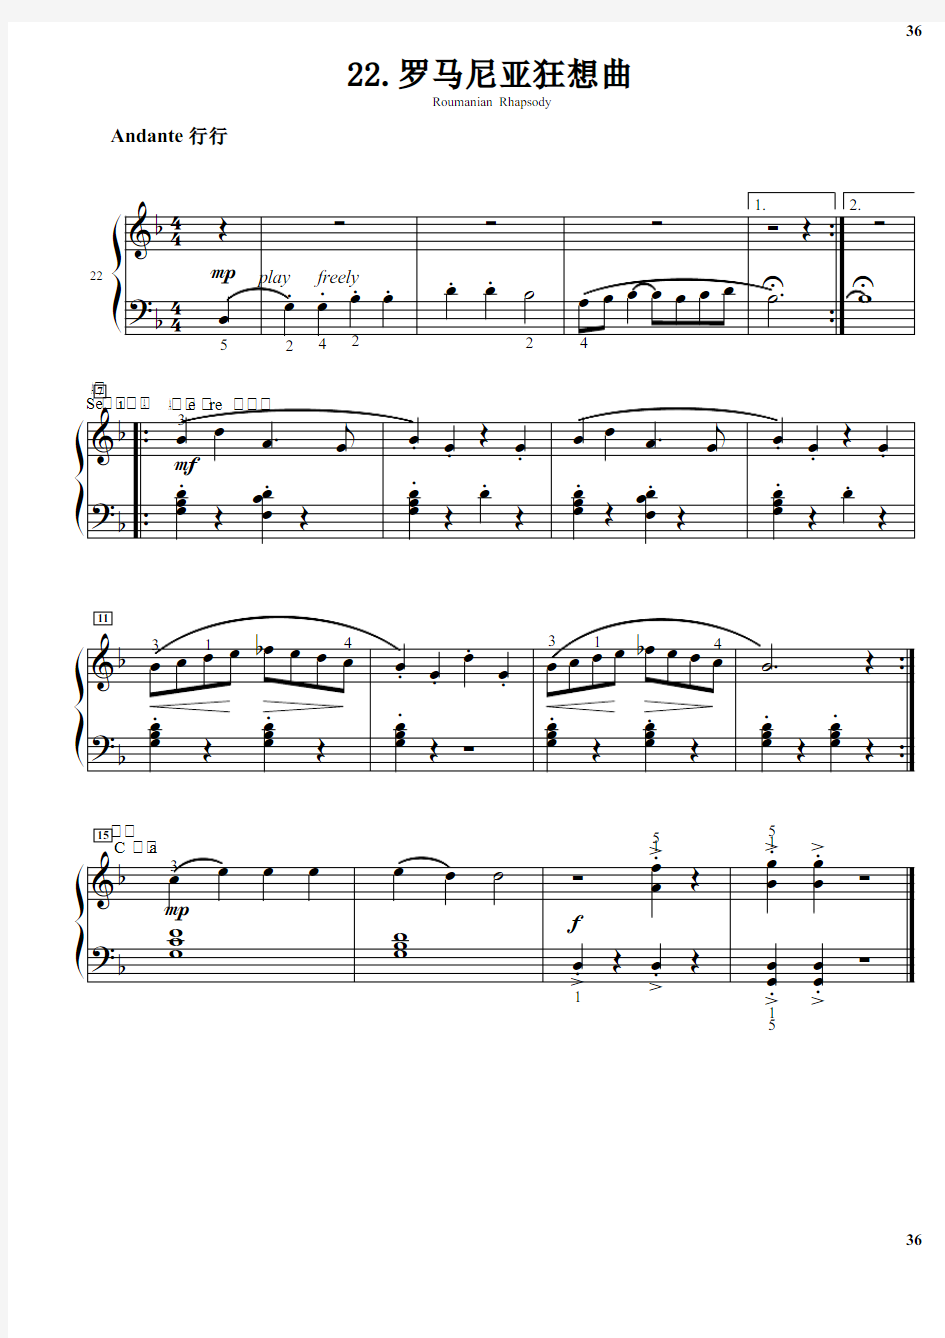 22.罗马尼亚狂想曲 巴斯蒂安钢琴教程(3)基础 原版 正谱 五线谱 钢琴谱